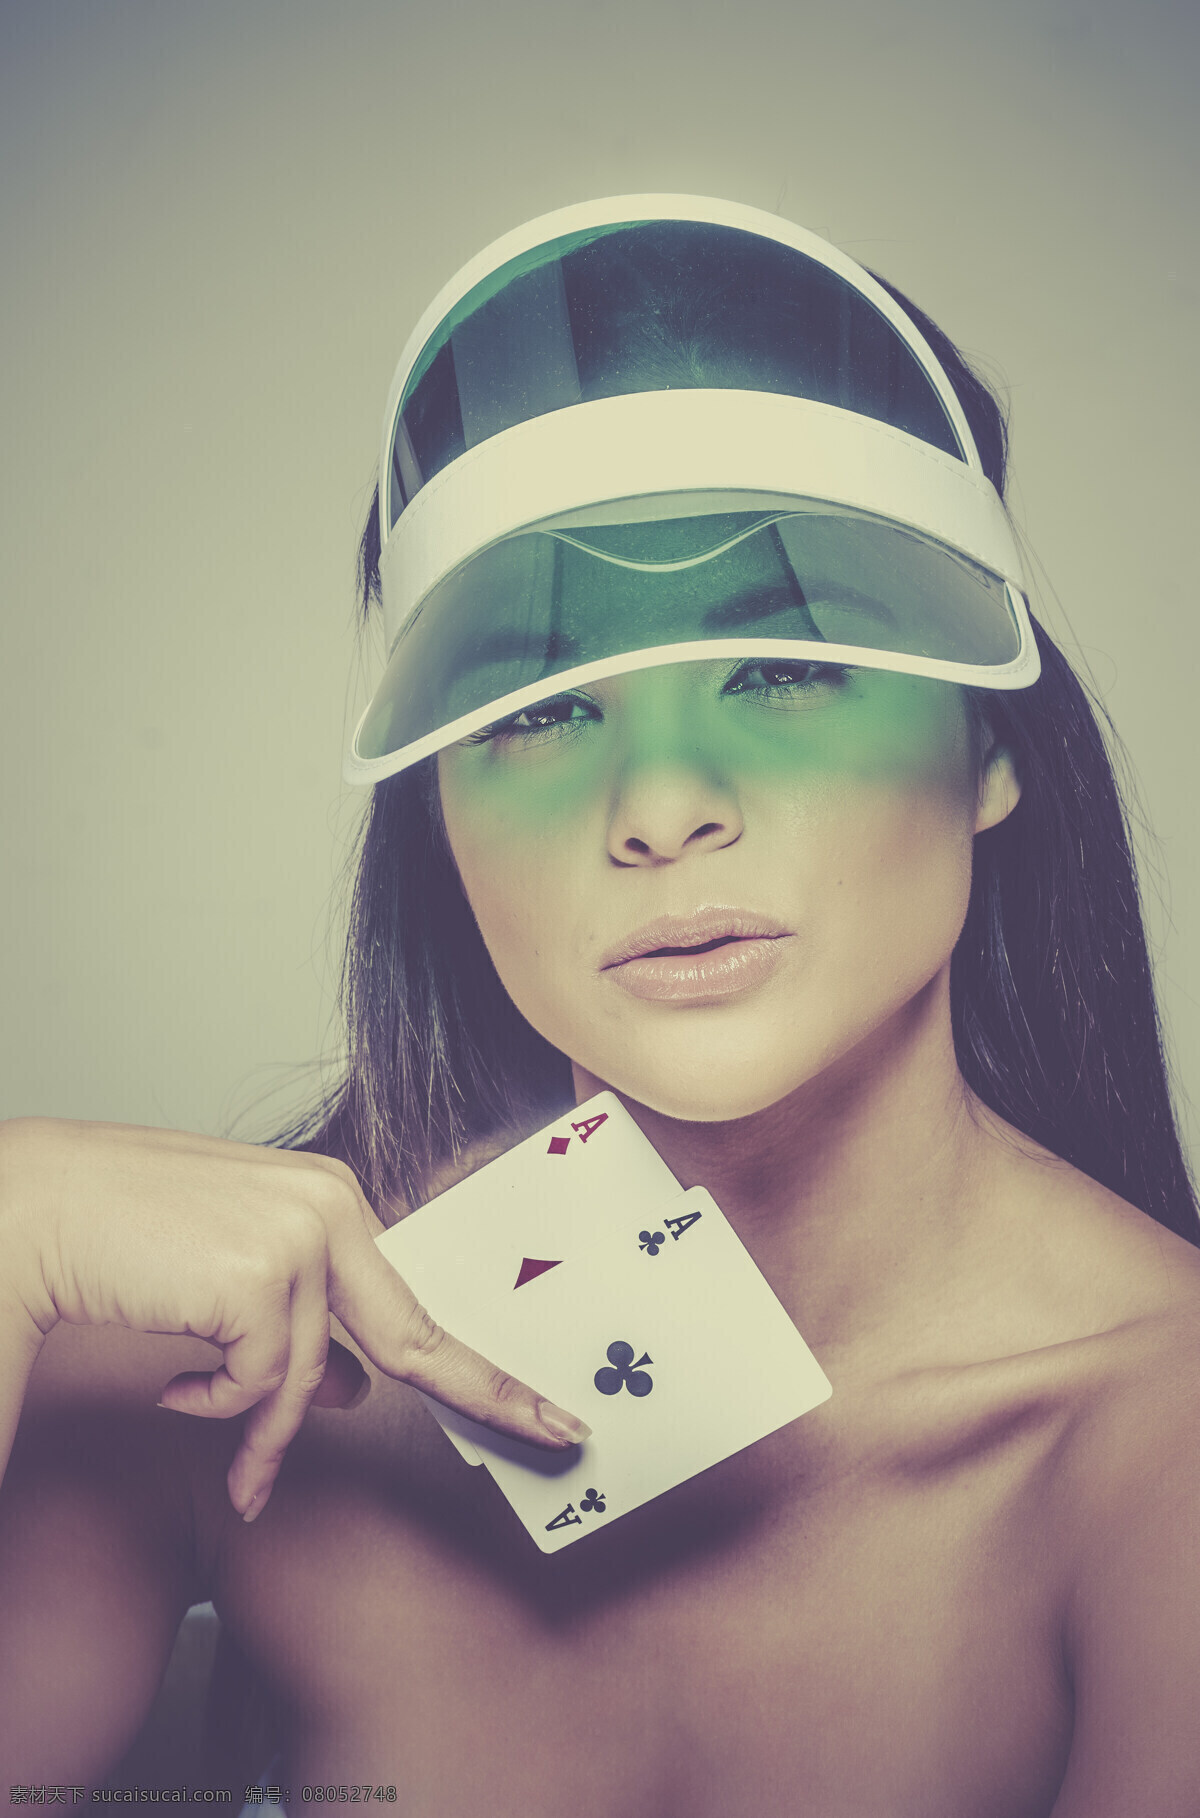 扑克 美女图片 赌博 赌钱 纸牌 性感美女 时尚女性 外国女人 欧美女性 美女模特 美女写真 人物图片